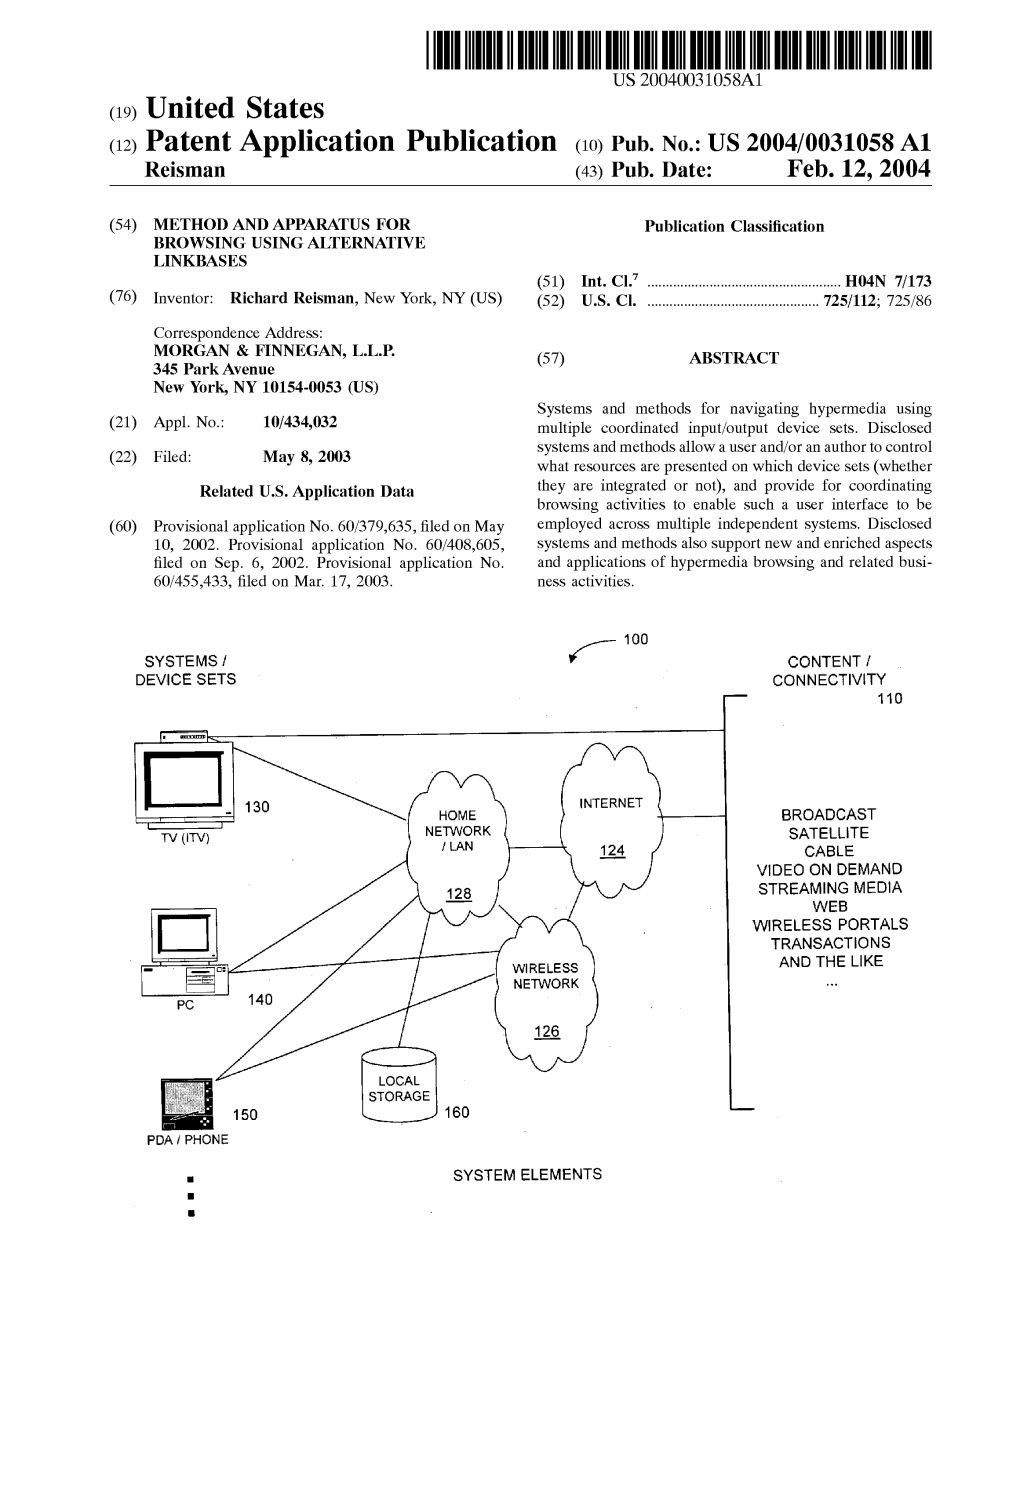 (12) Patent Application Publication (10) Pub. No.: US 2004/0031058 A1 Reisman (43) Pub